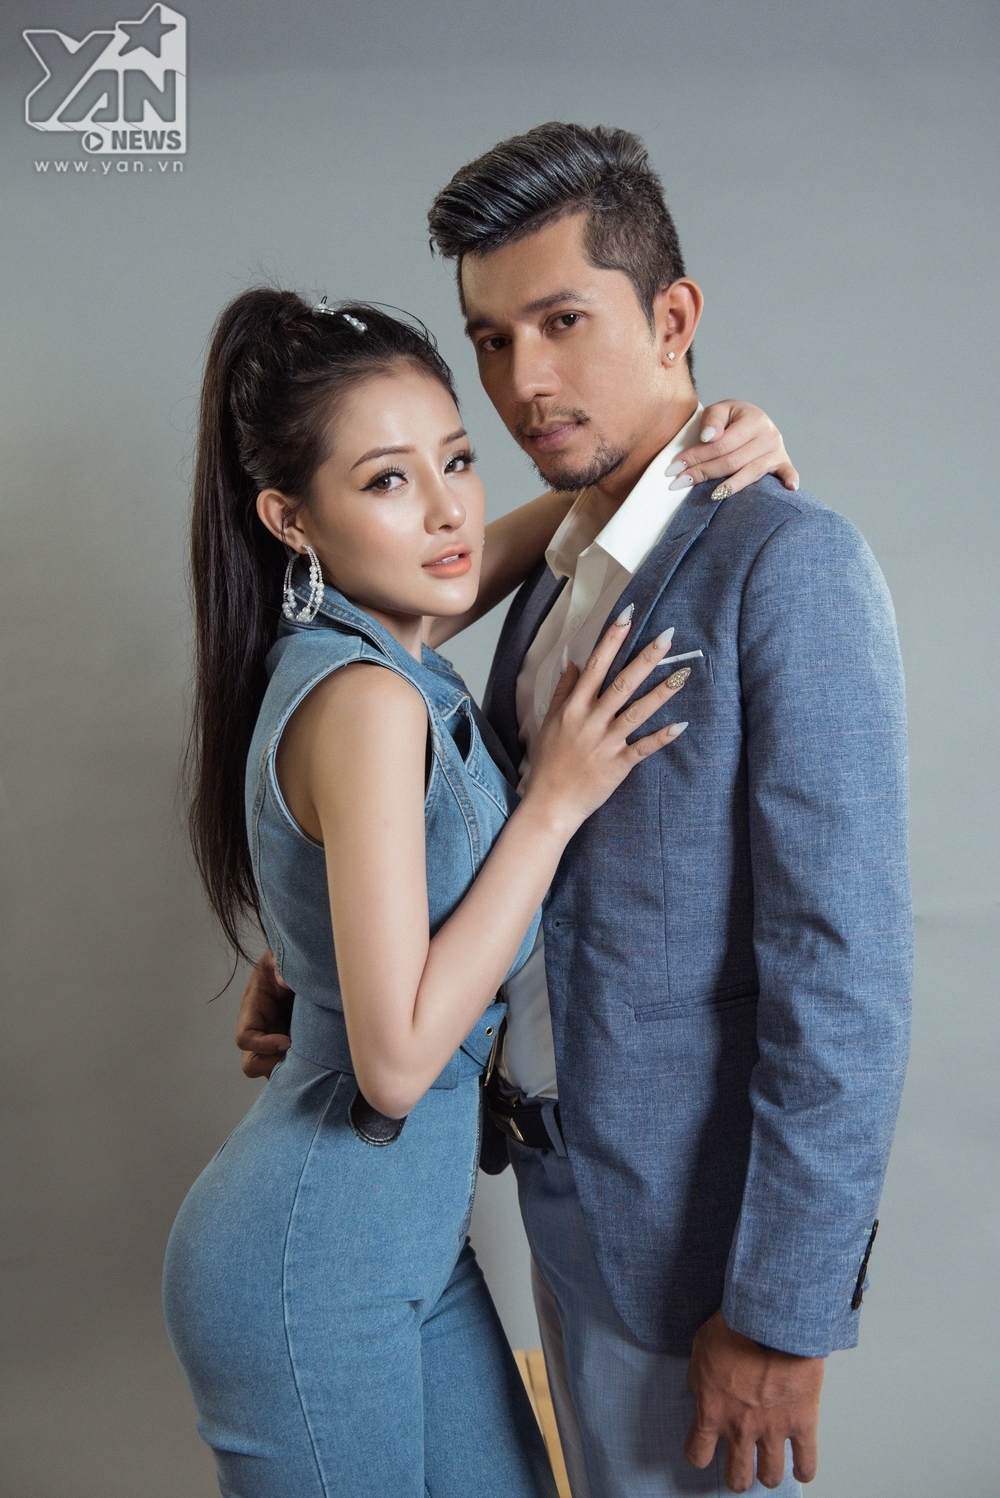 
Xuất hiện trong buổi chụp hình sau cuộc "đại phẫu", Lương Bằng Quang và Ngân 98 gây ấn tượng bởi gu thời trang thời thượng, tông xuyệt tộng đúng điệu của một cặp tình nhân.